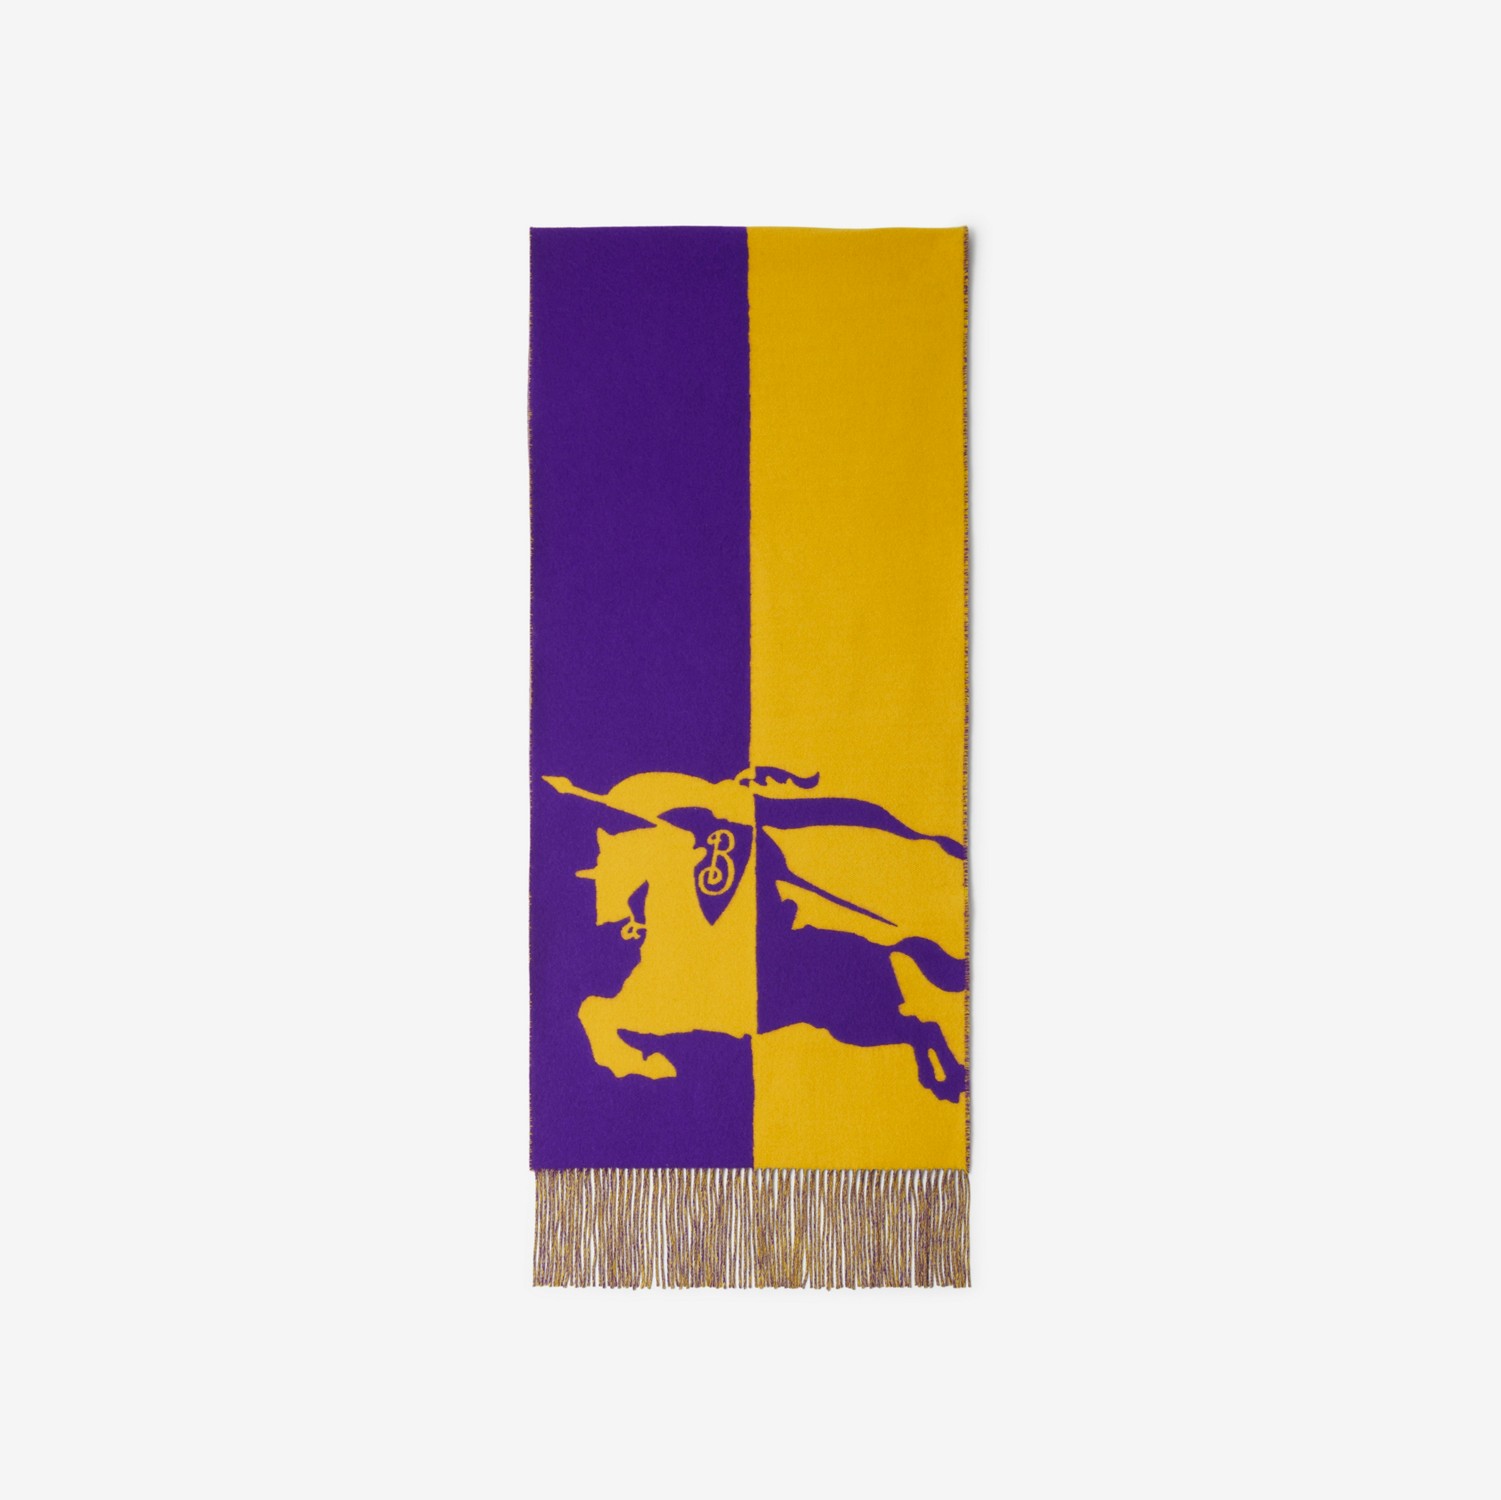 马术骑士徽标羊毛羊绒混纺围巾 (秋梨黄 / 皇室紫) | Burberry® 博柏利官网